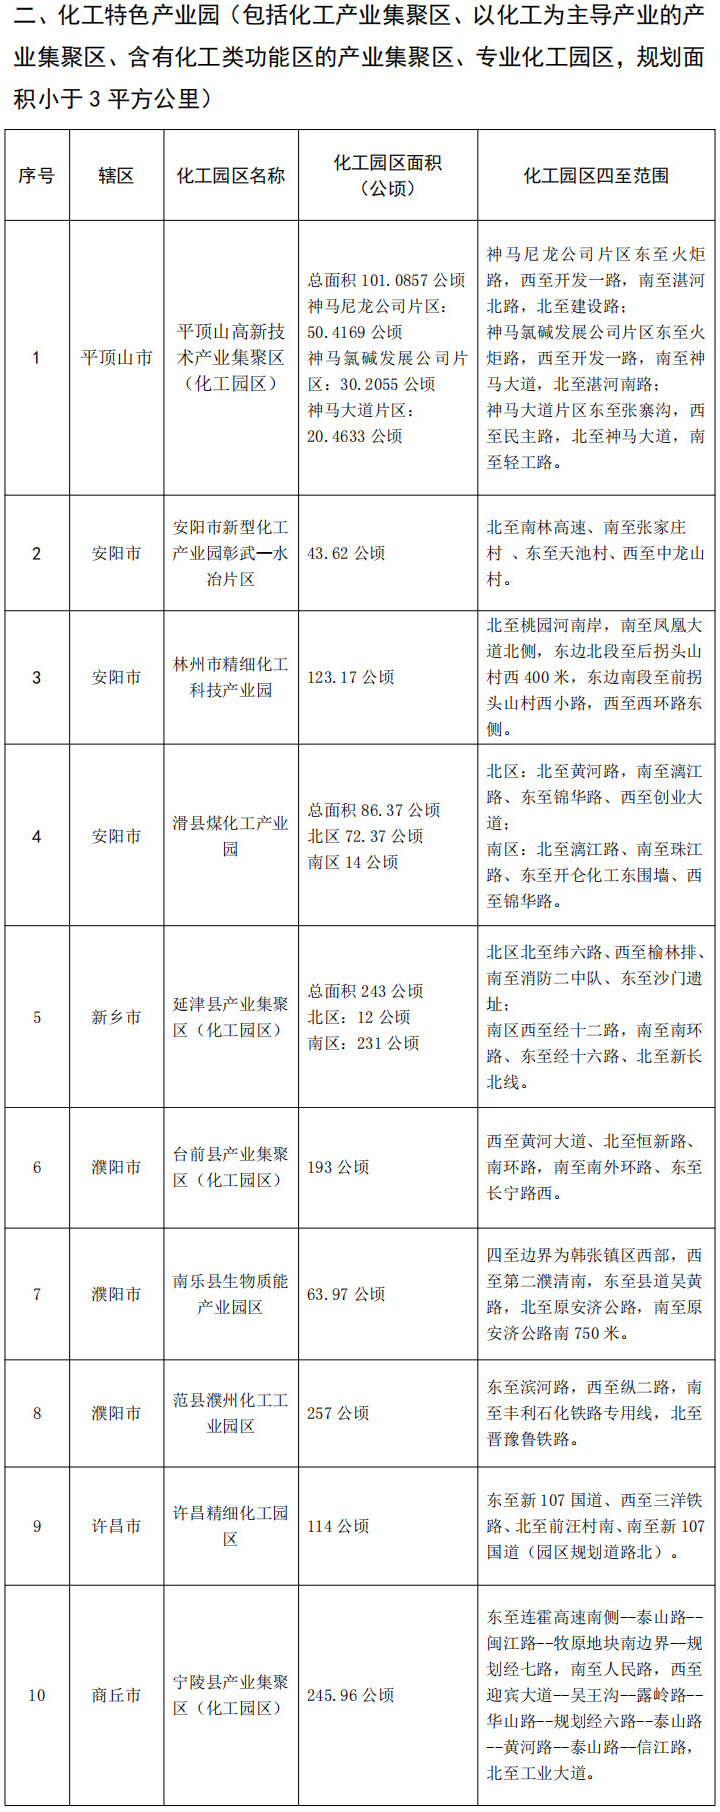 關于河南省化工園區名單（第二批）的公示